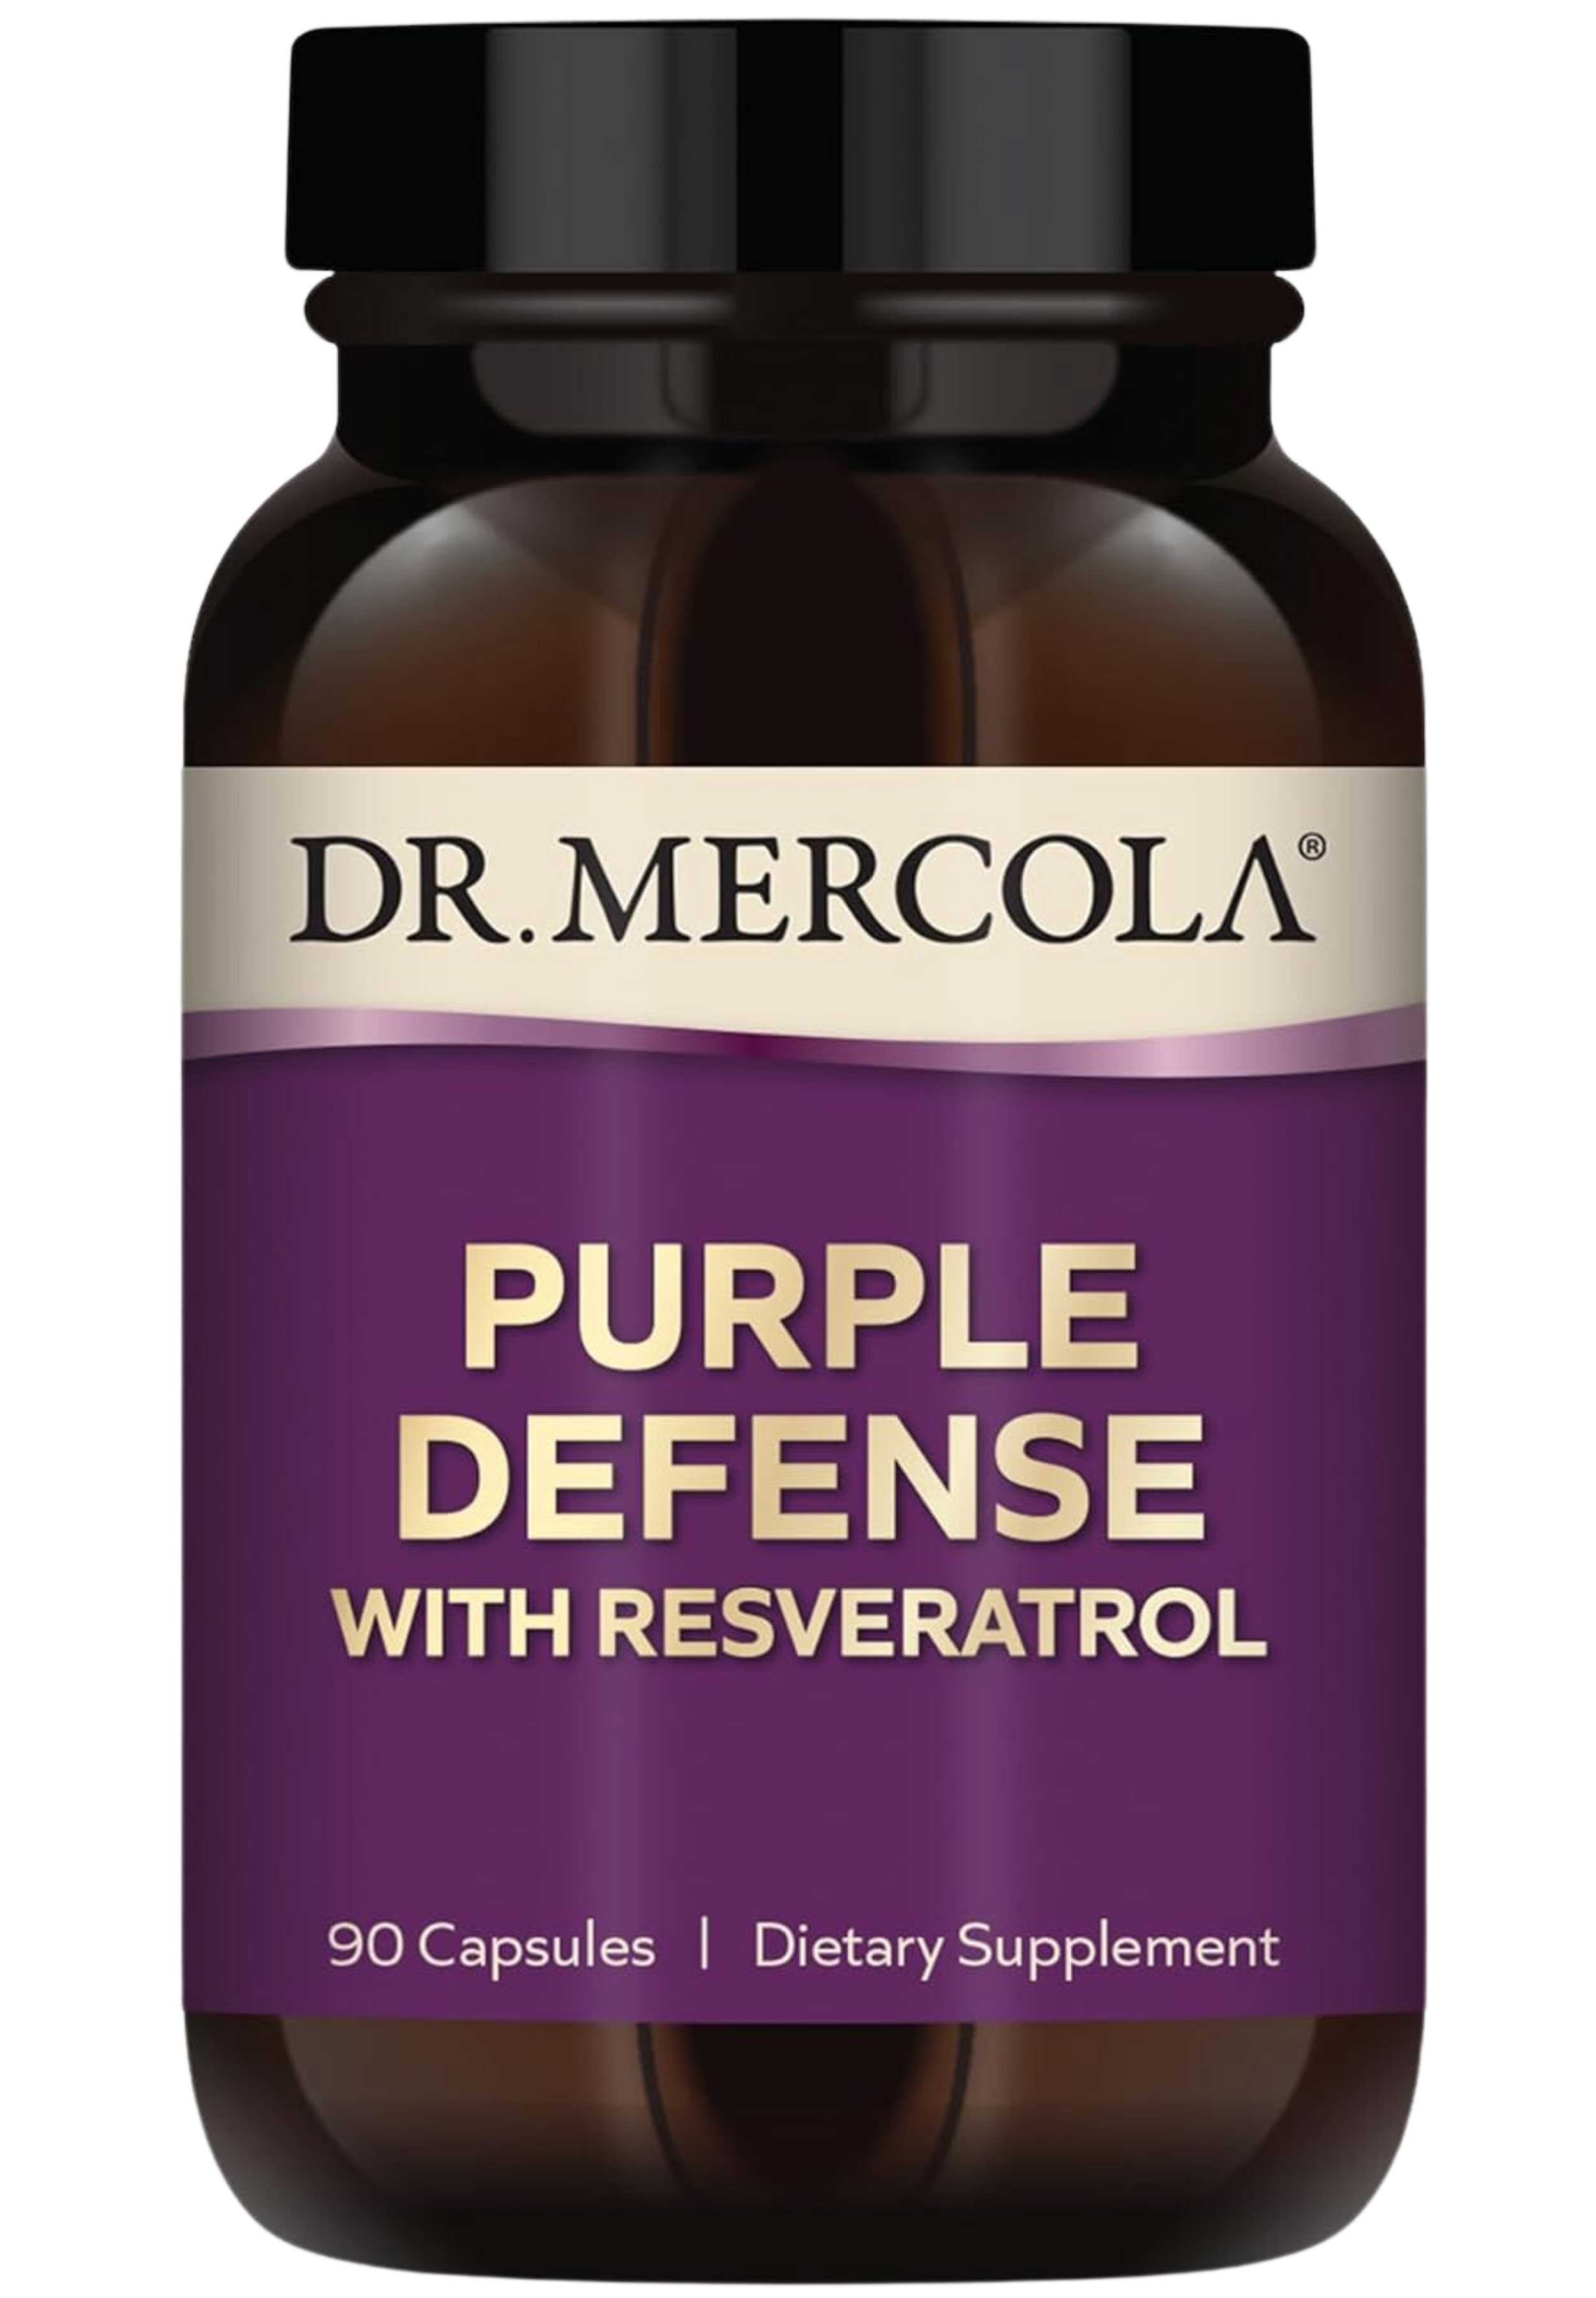 Dr. Mercola Purple Defense